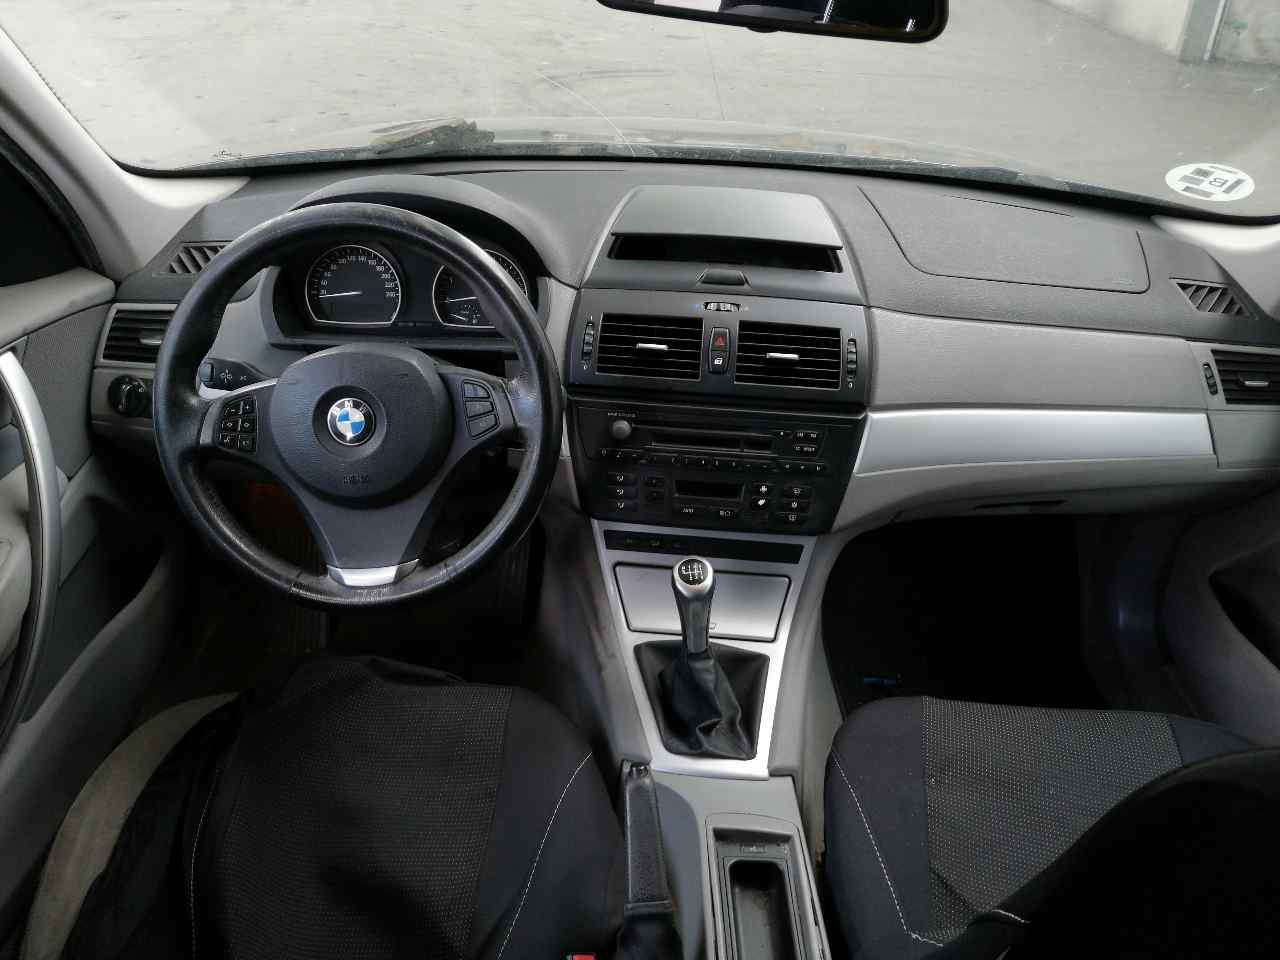 BMW X3 E83 (2003-2010) Kitos variklio skyriaus detalės 340434104 19925067